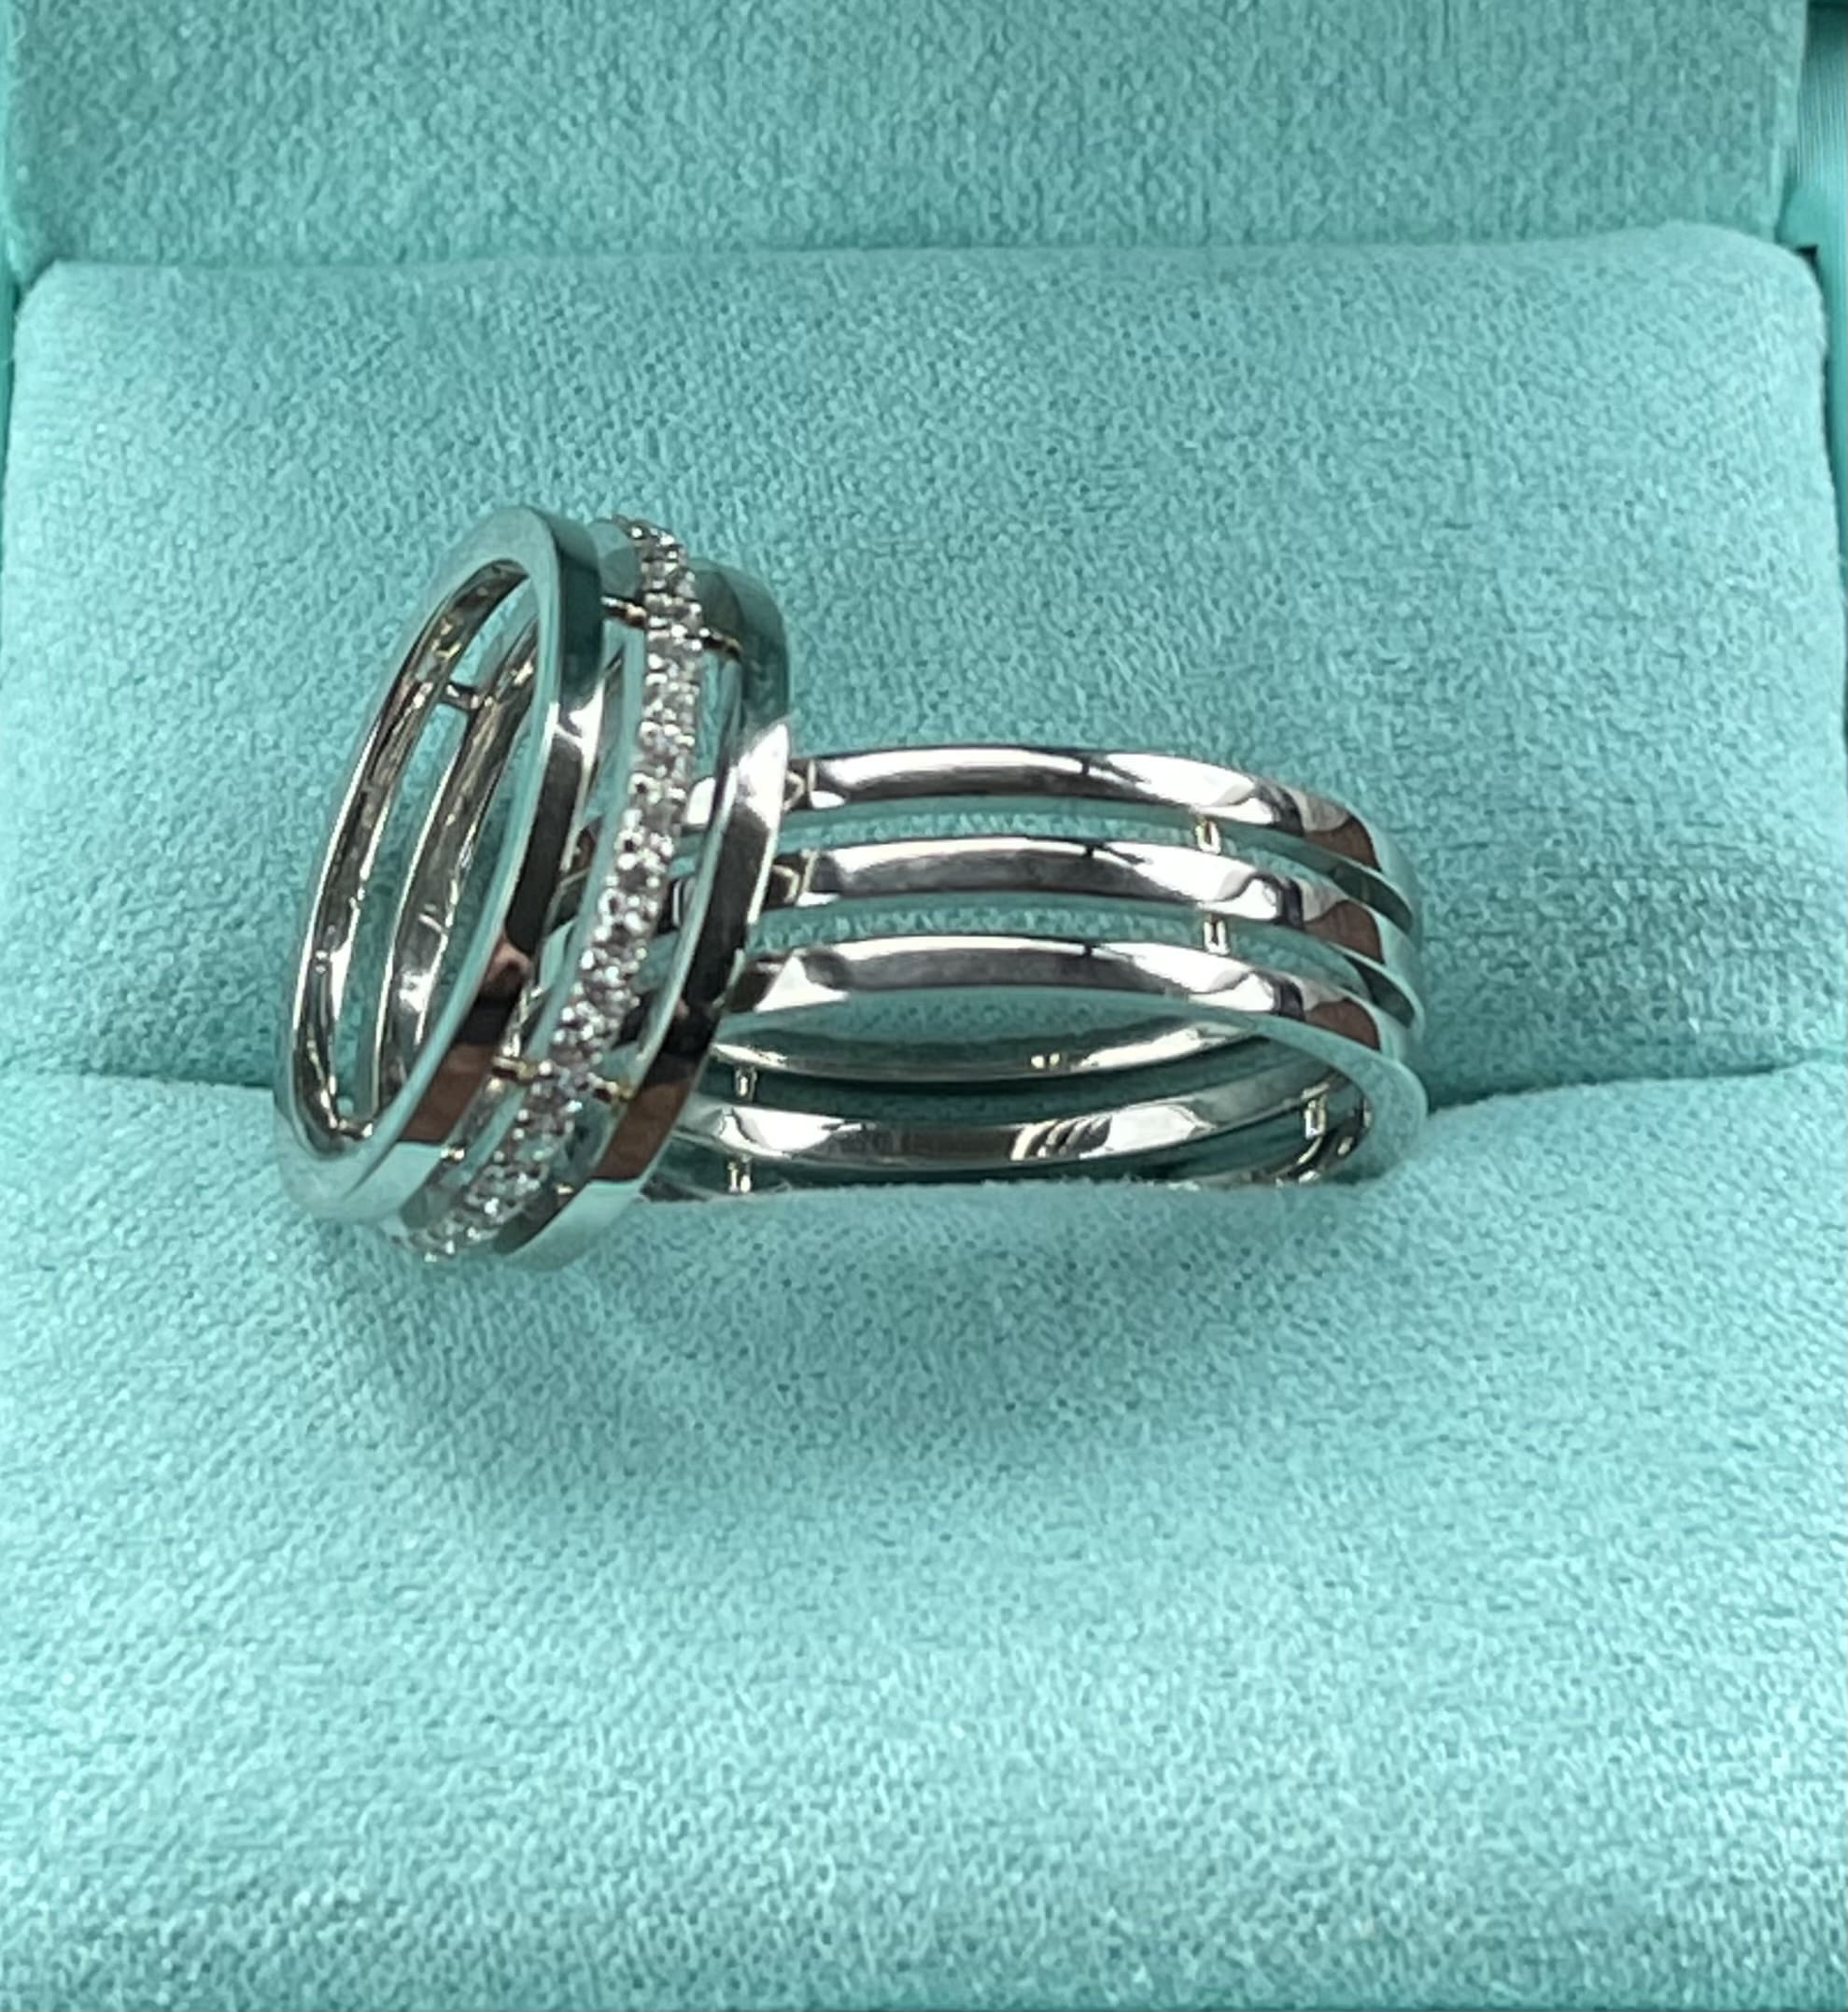 Обручальные кольца с бриллиантами(0,44 ct.) из платины 950 пробы